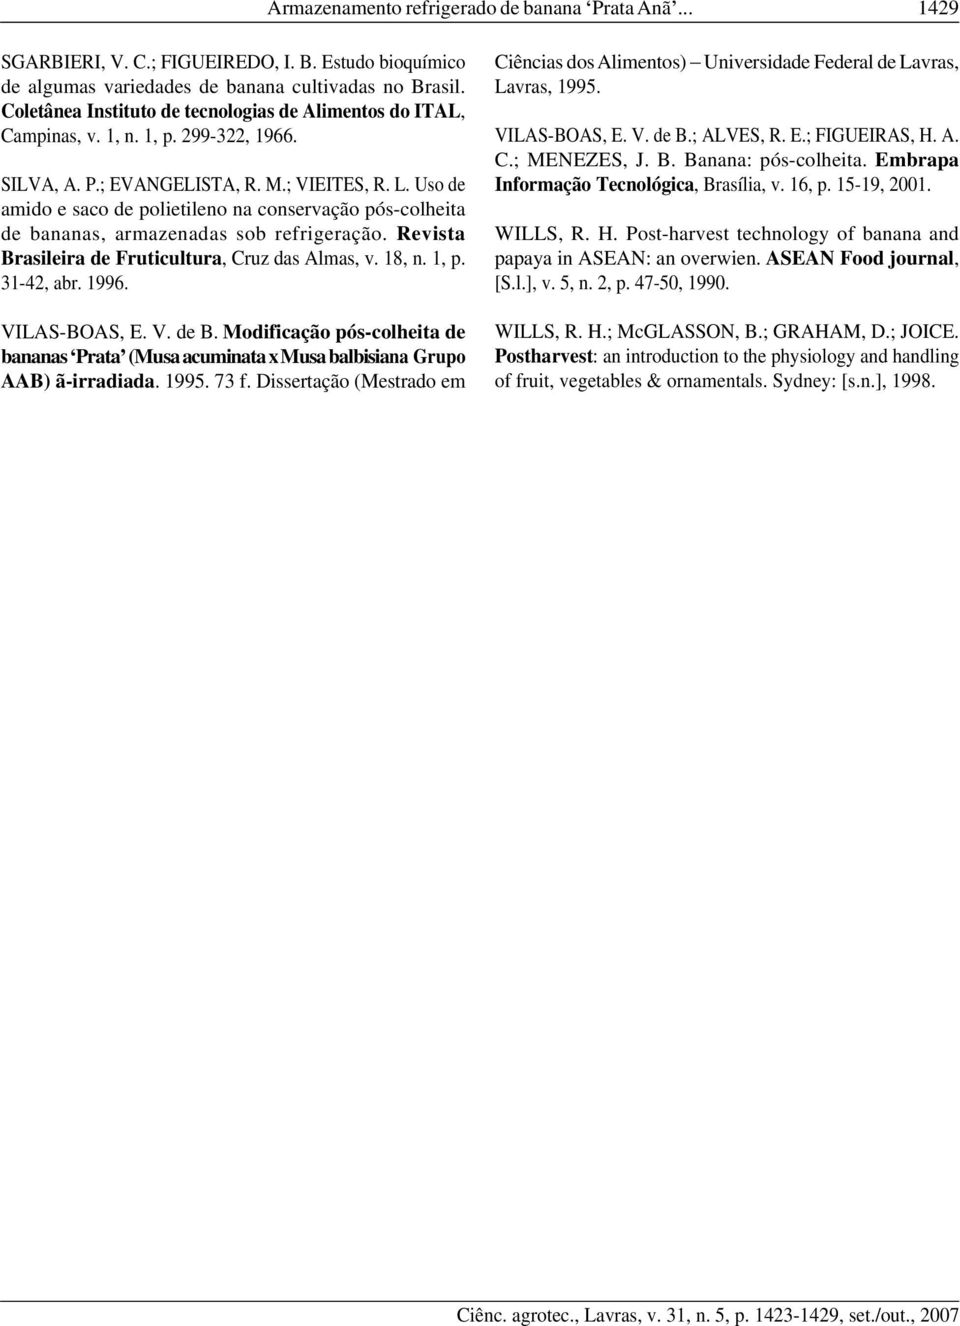 Uso de amido e saco de polietileno na conservação pós-colheita de bananas, armazenadas sob refrigeração. Revista Brasileira de Fruticultura, Cruz das Almas, v. 18, n. 1, p. 31-42, abr. 1996.